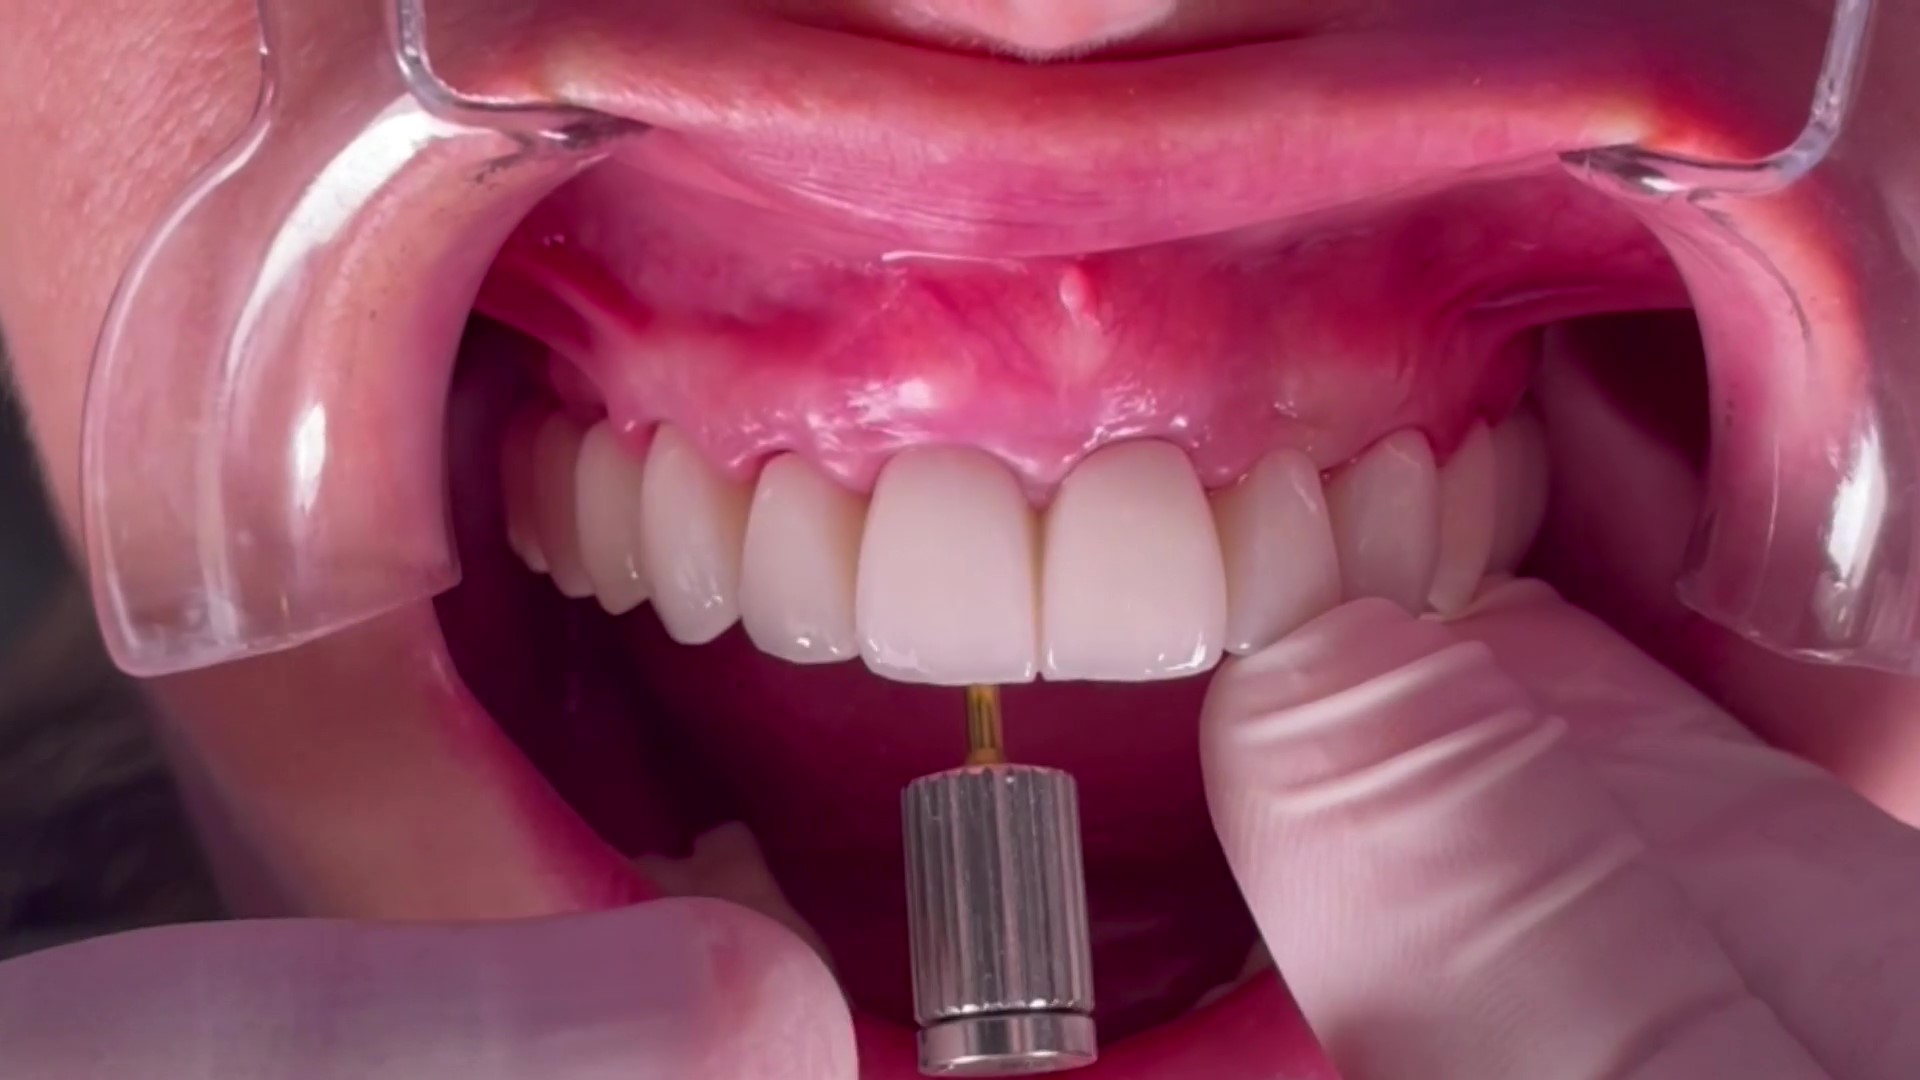 Comment entretenir un implant dentaire pour prolonger sa durée de vie ?